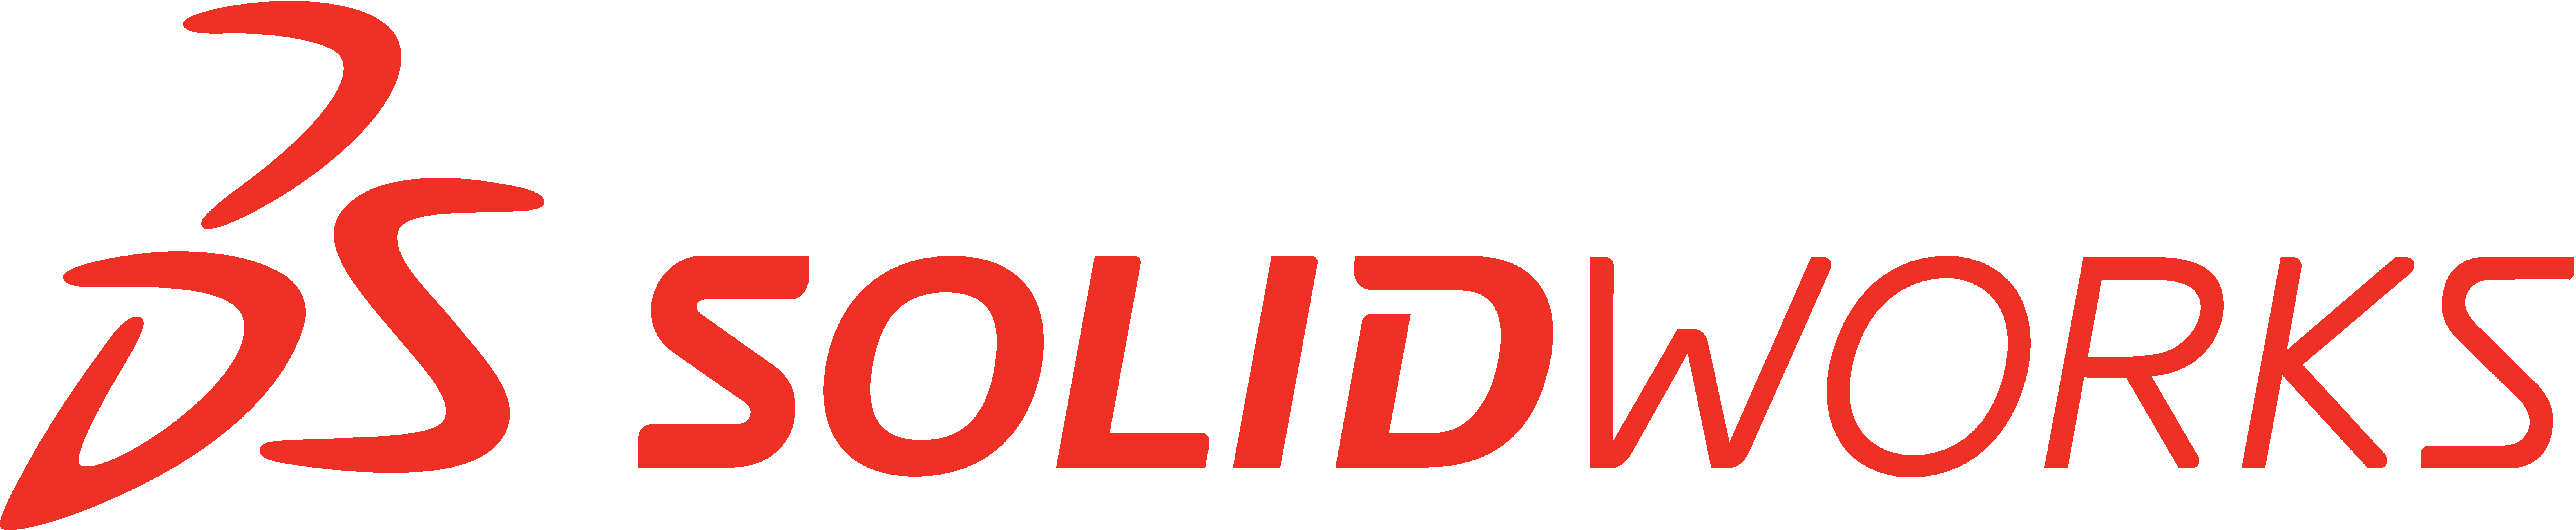 solidworks 2017 logo